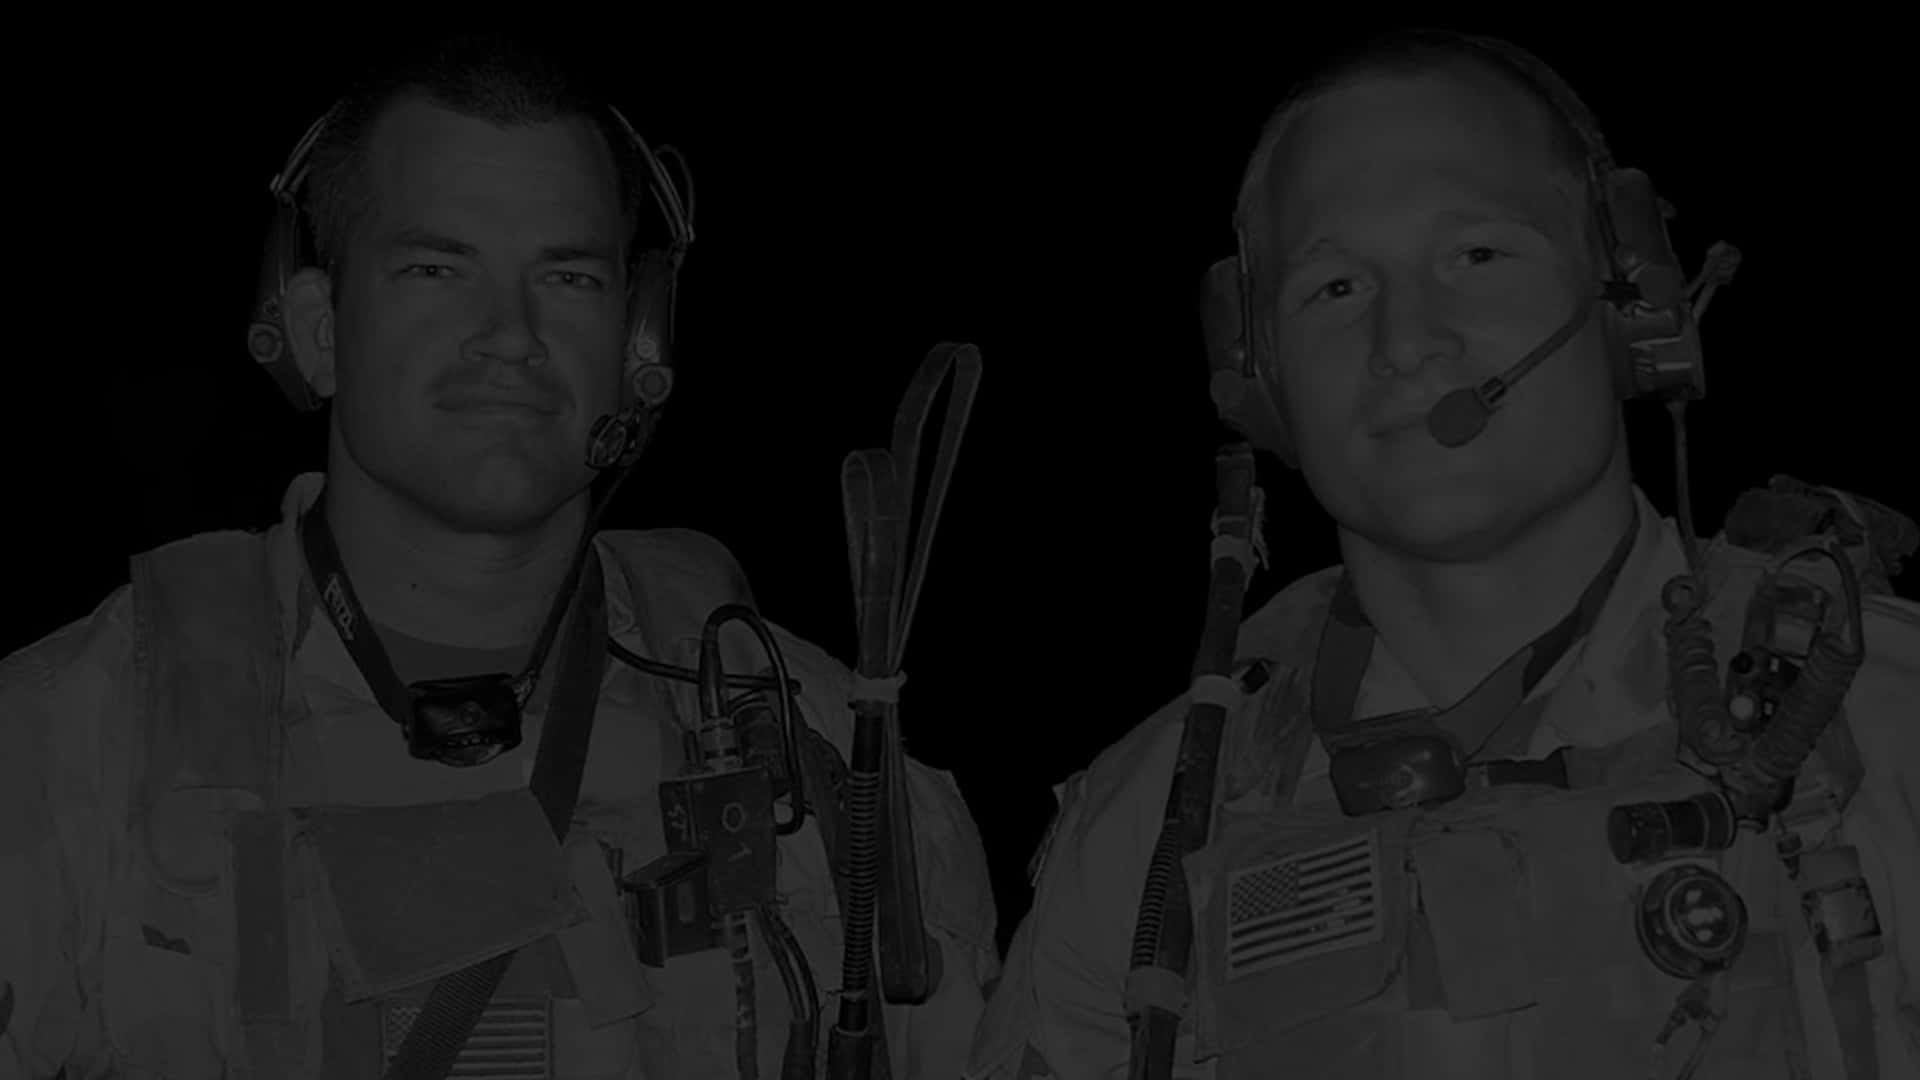 Zweimänner In Militäruniform Stehen In Einem Dunklen Raum. Wallpaper